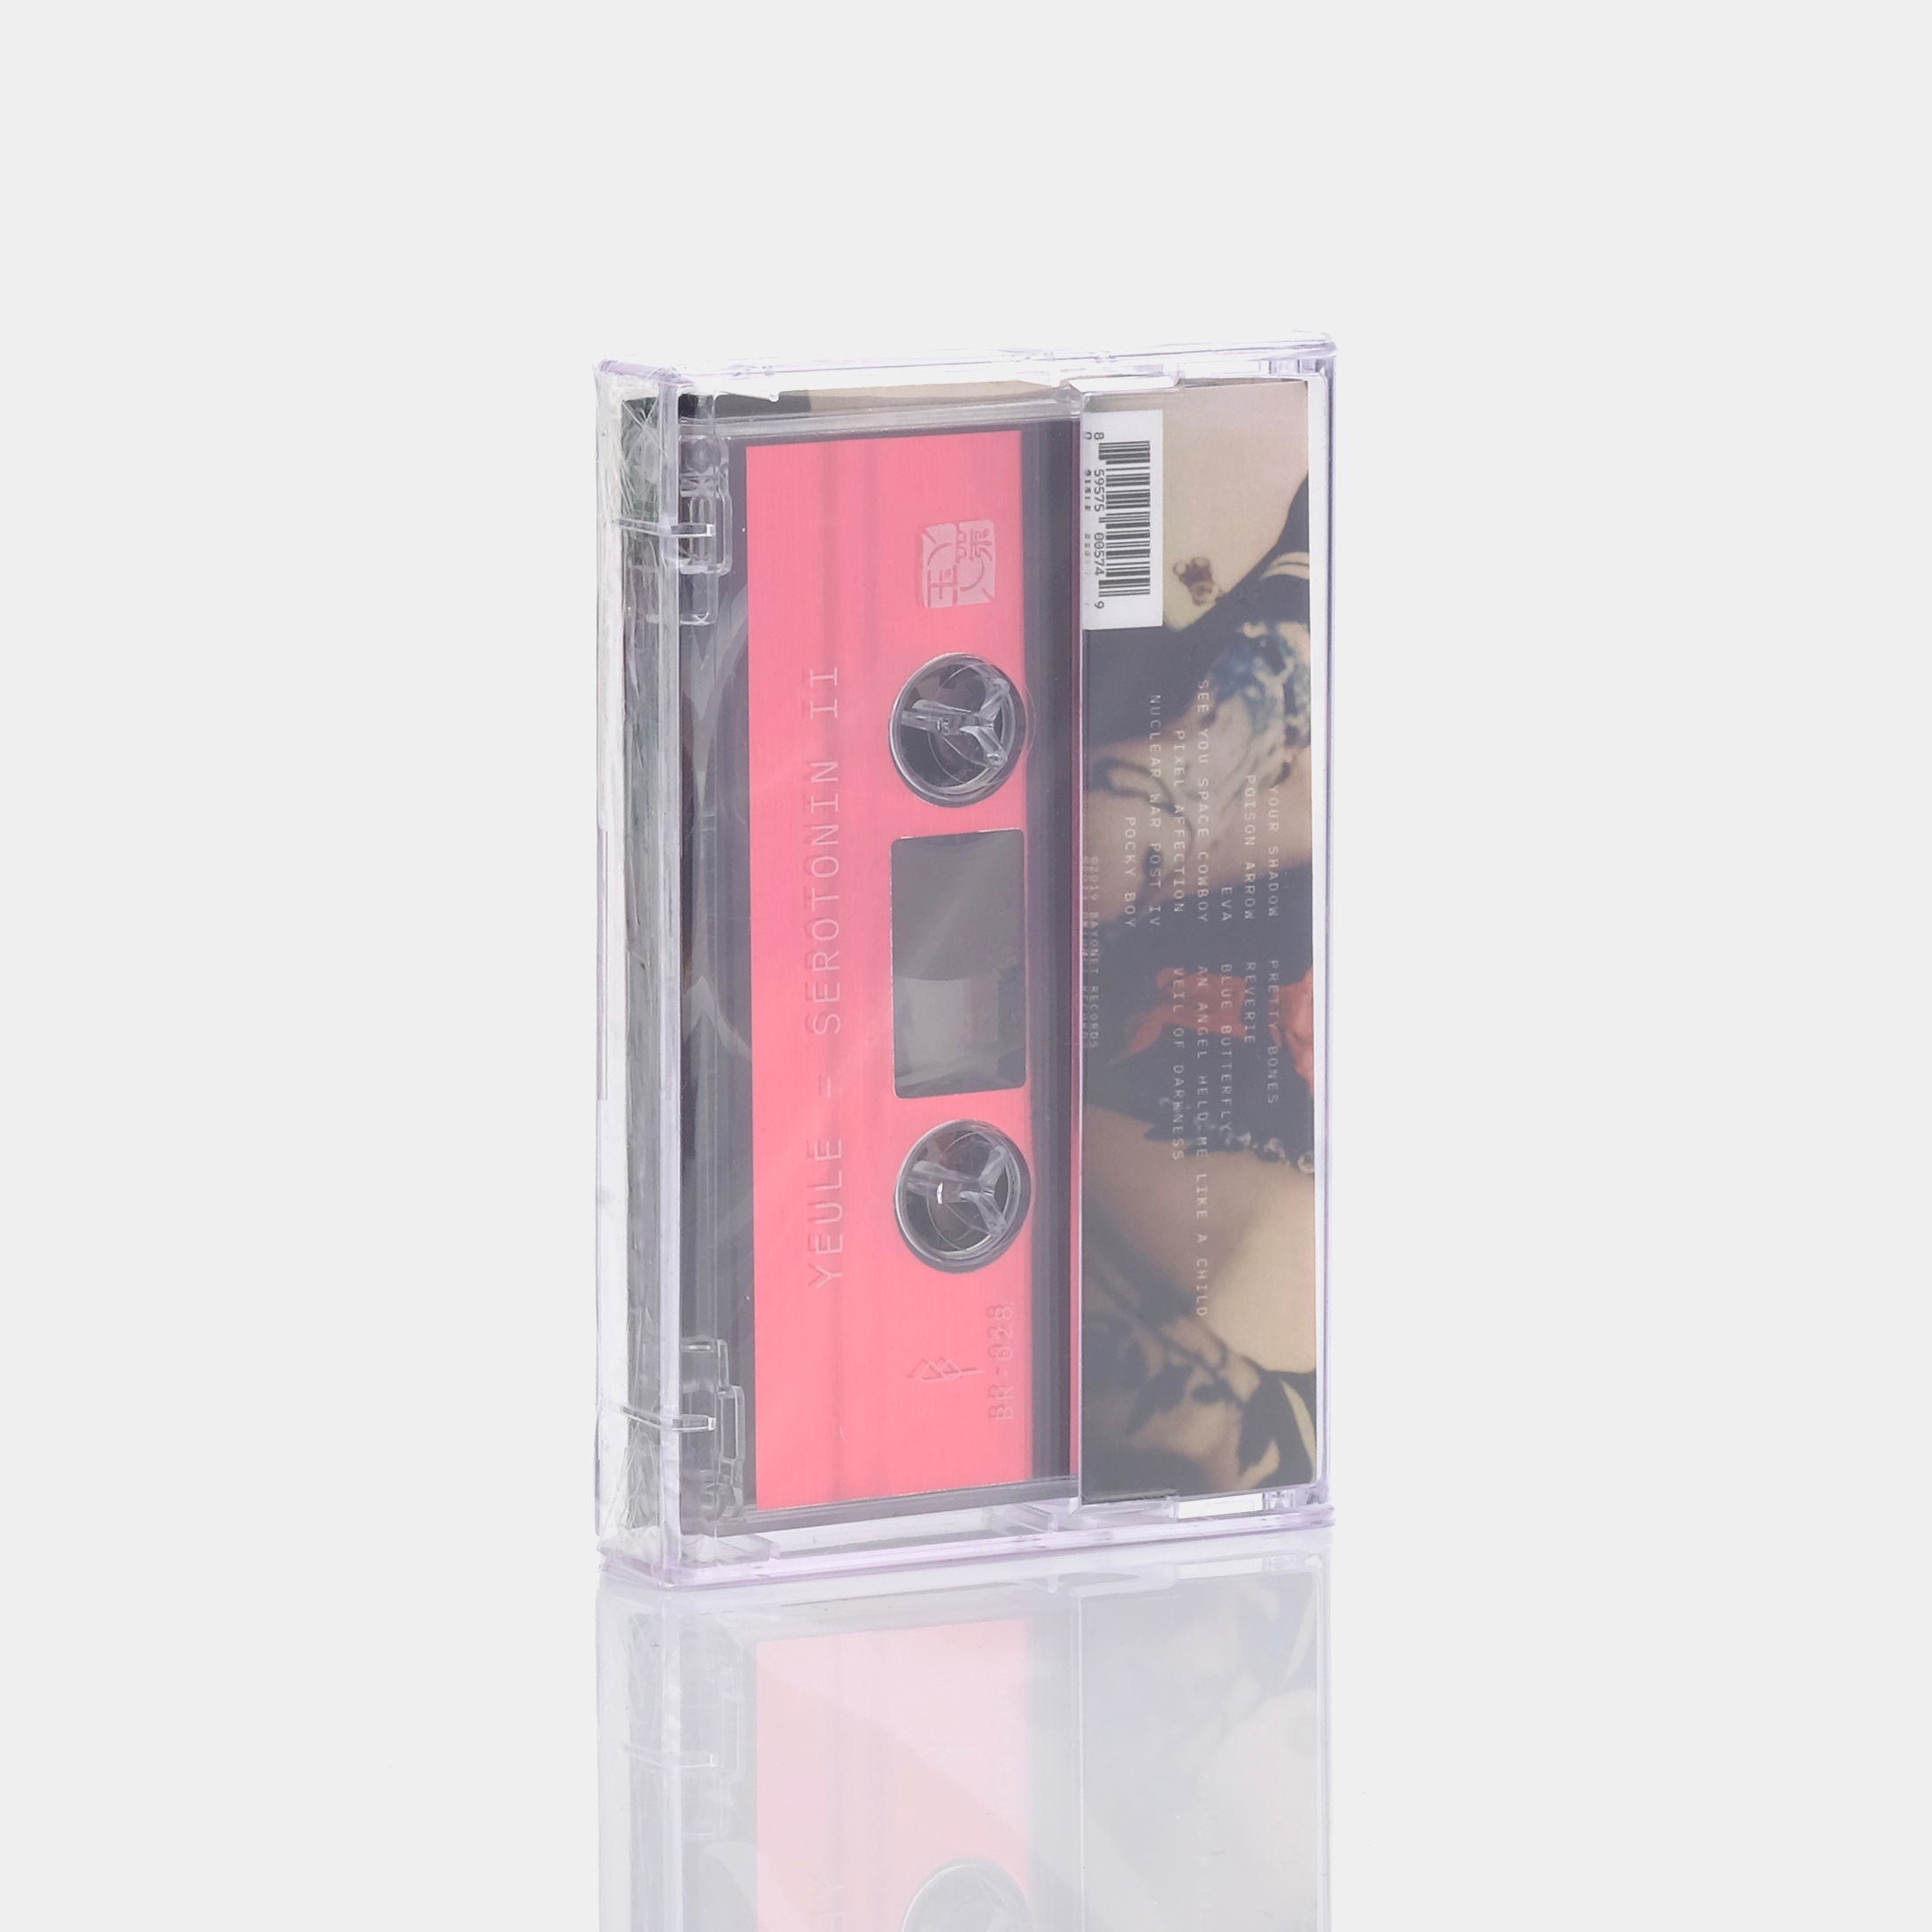 yeule - Serotonin II Cassette Tape